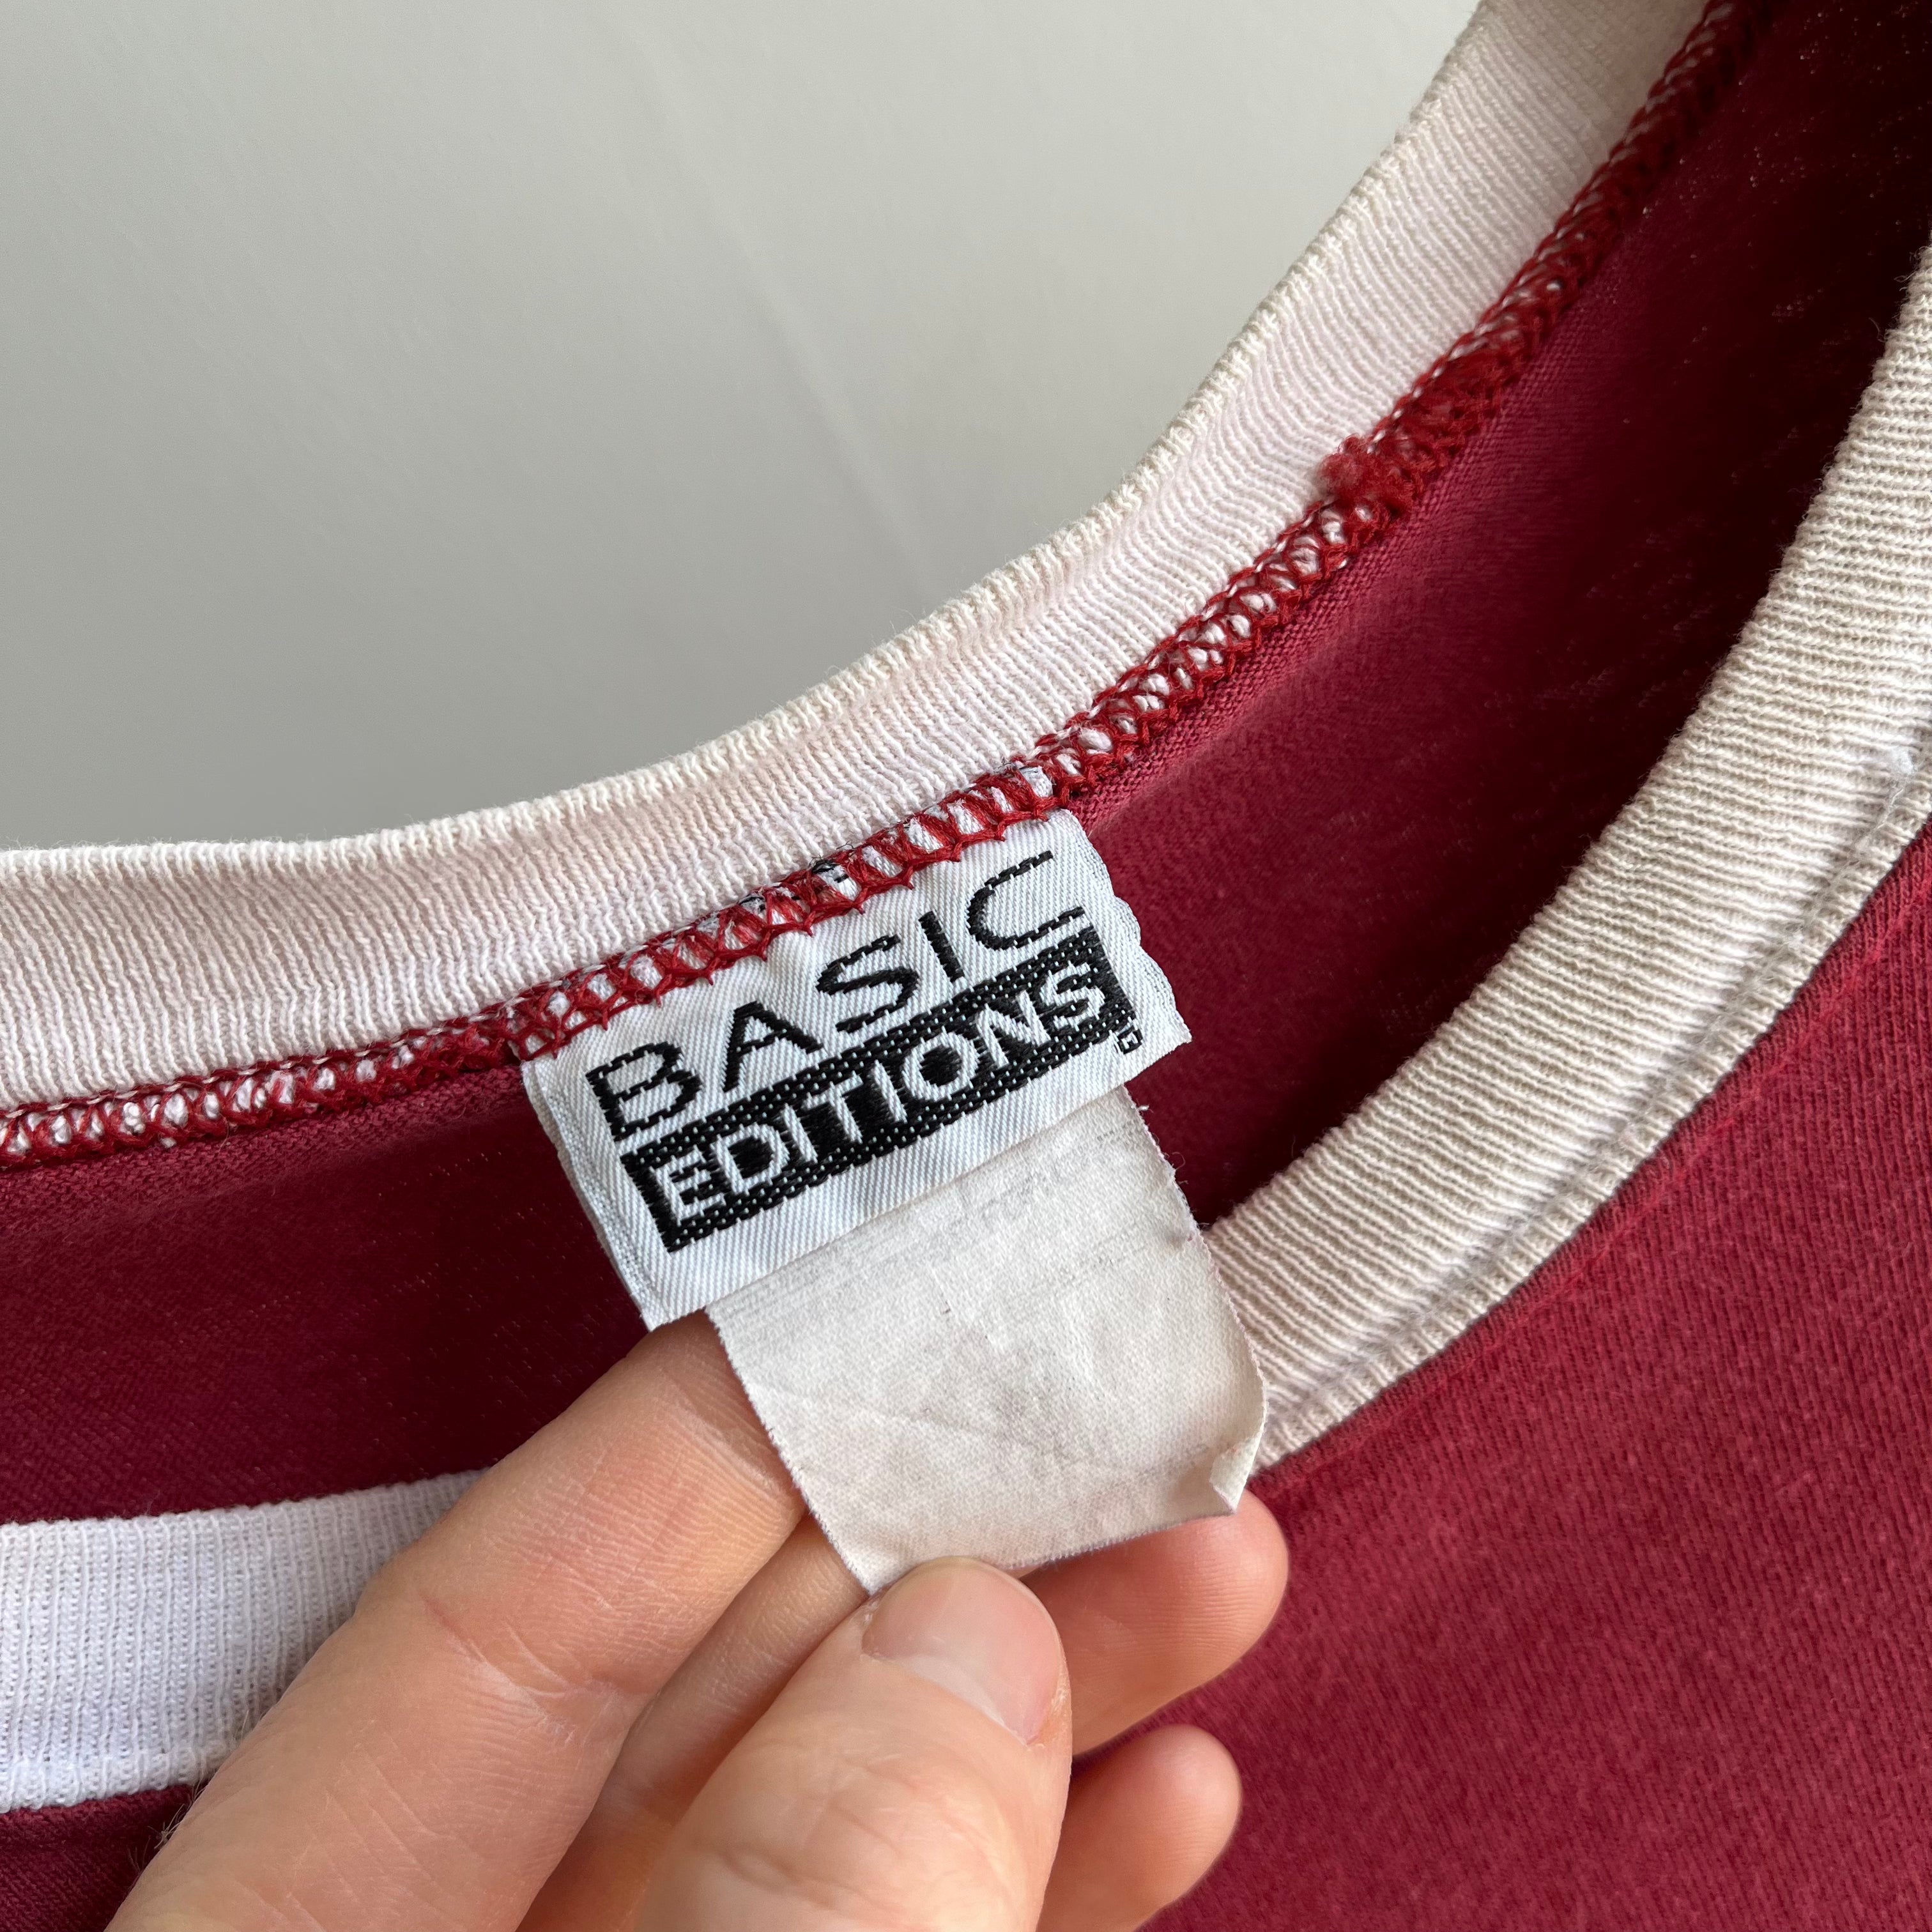 1990s Basic Concepts Double Stripe Cotton T-Shirt